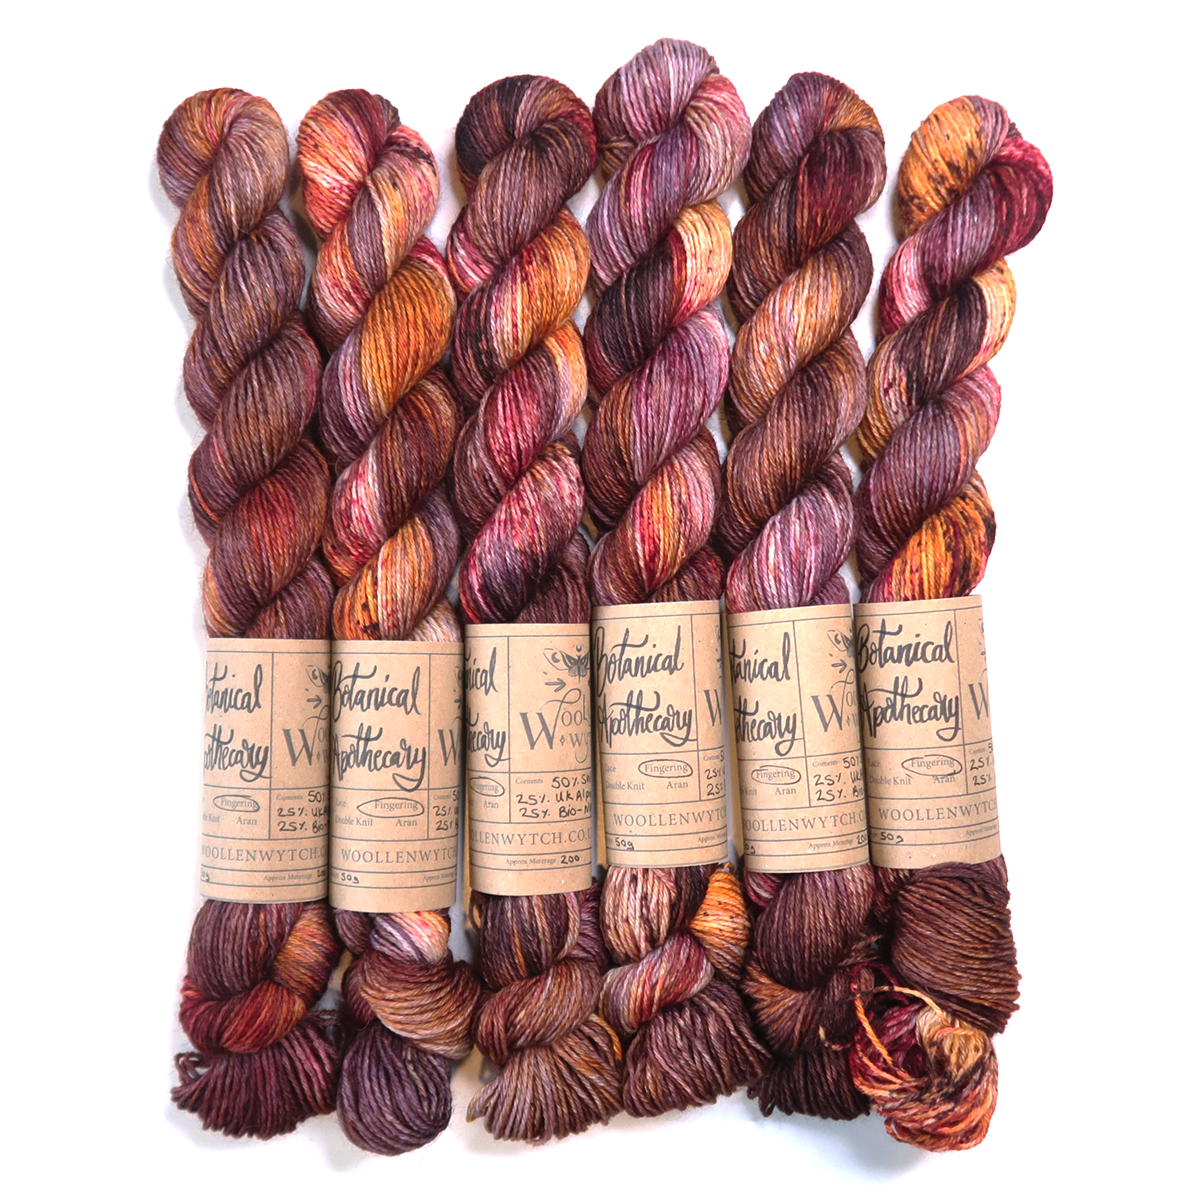 red orange purple hand dyed yarn using British wool by Woollen wytch in Bristol uk 